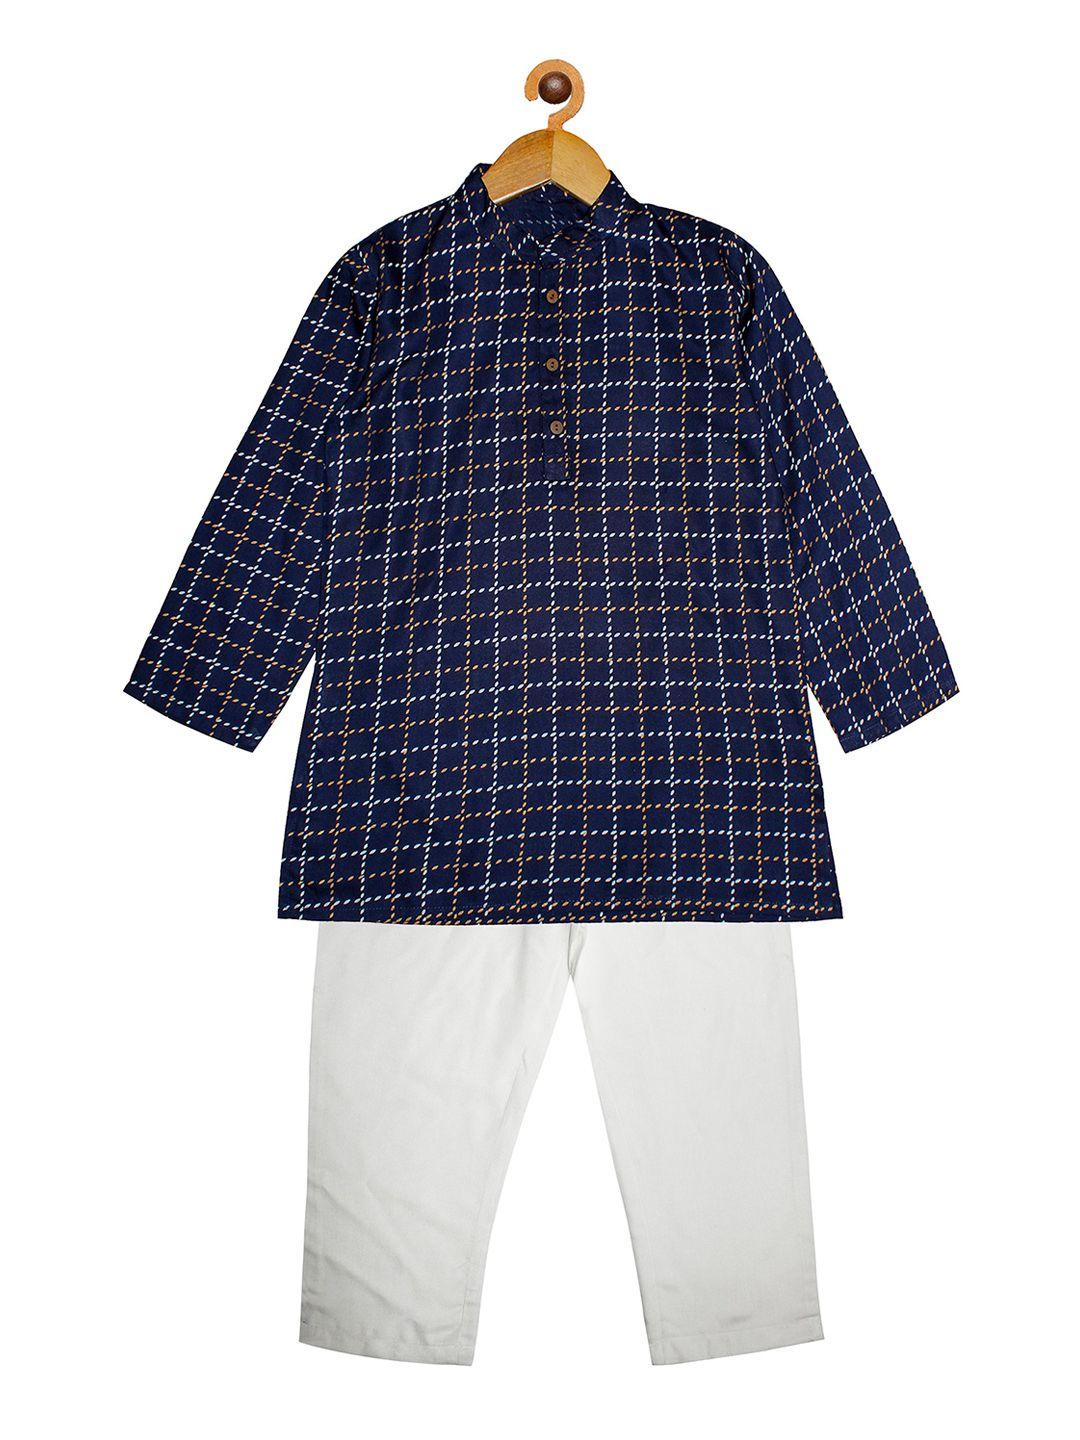 kiddopanti boys navy blue printed kurta with pyjamas